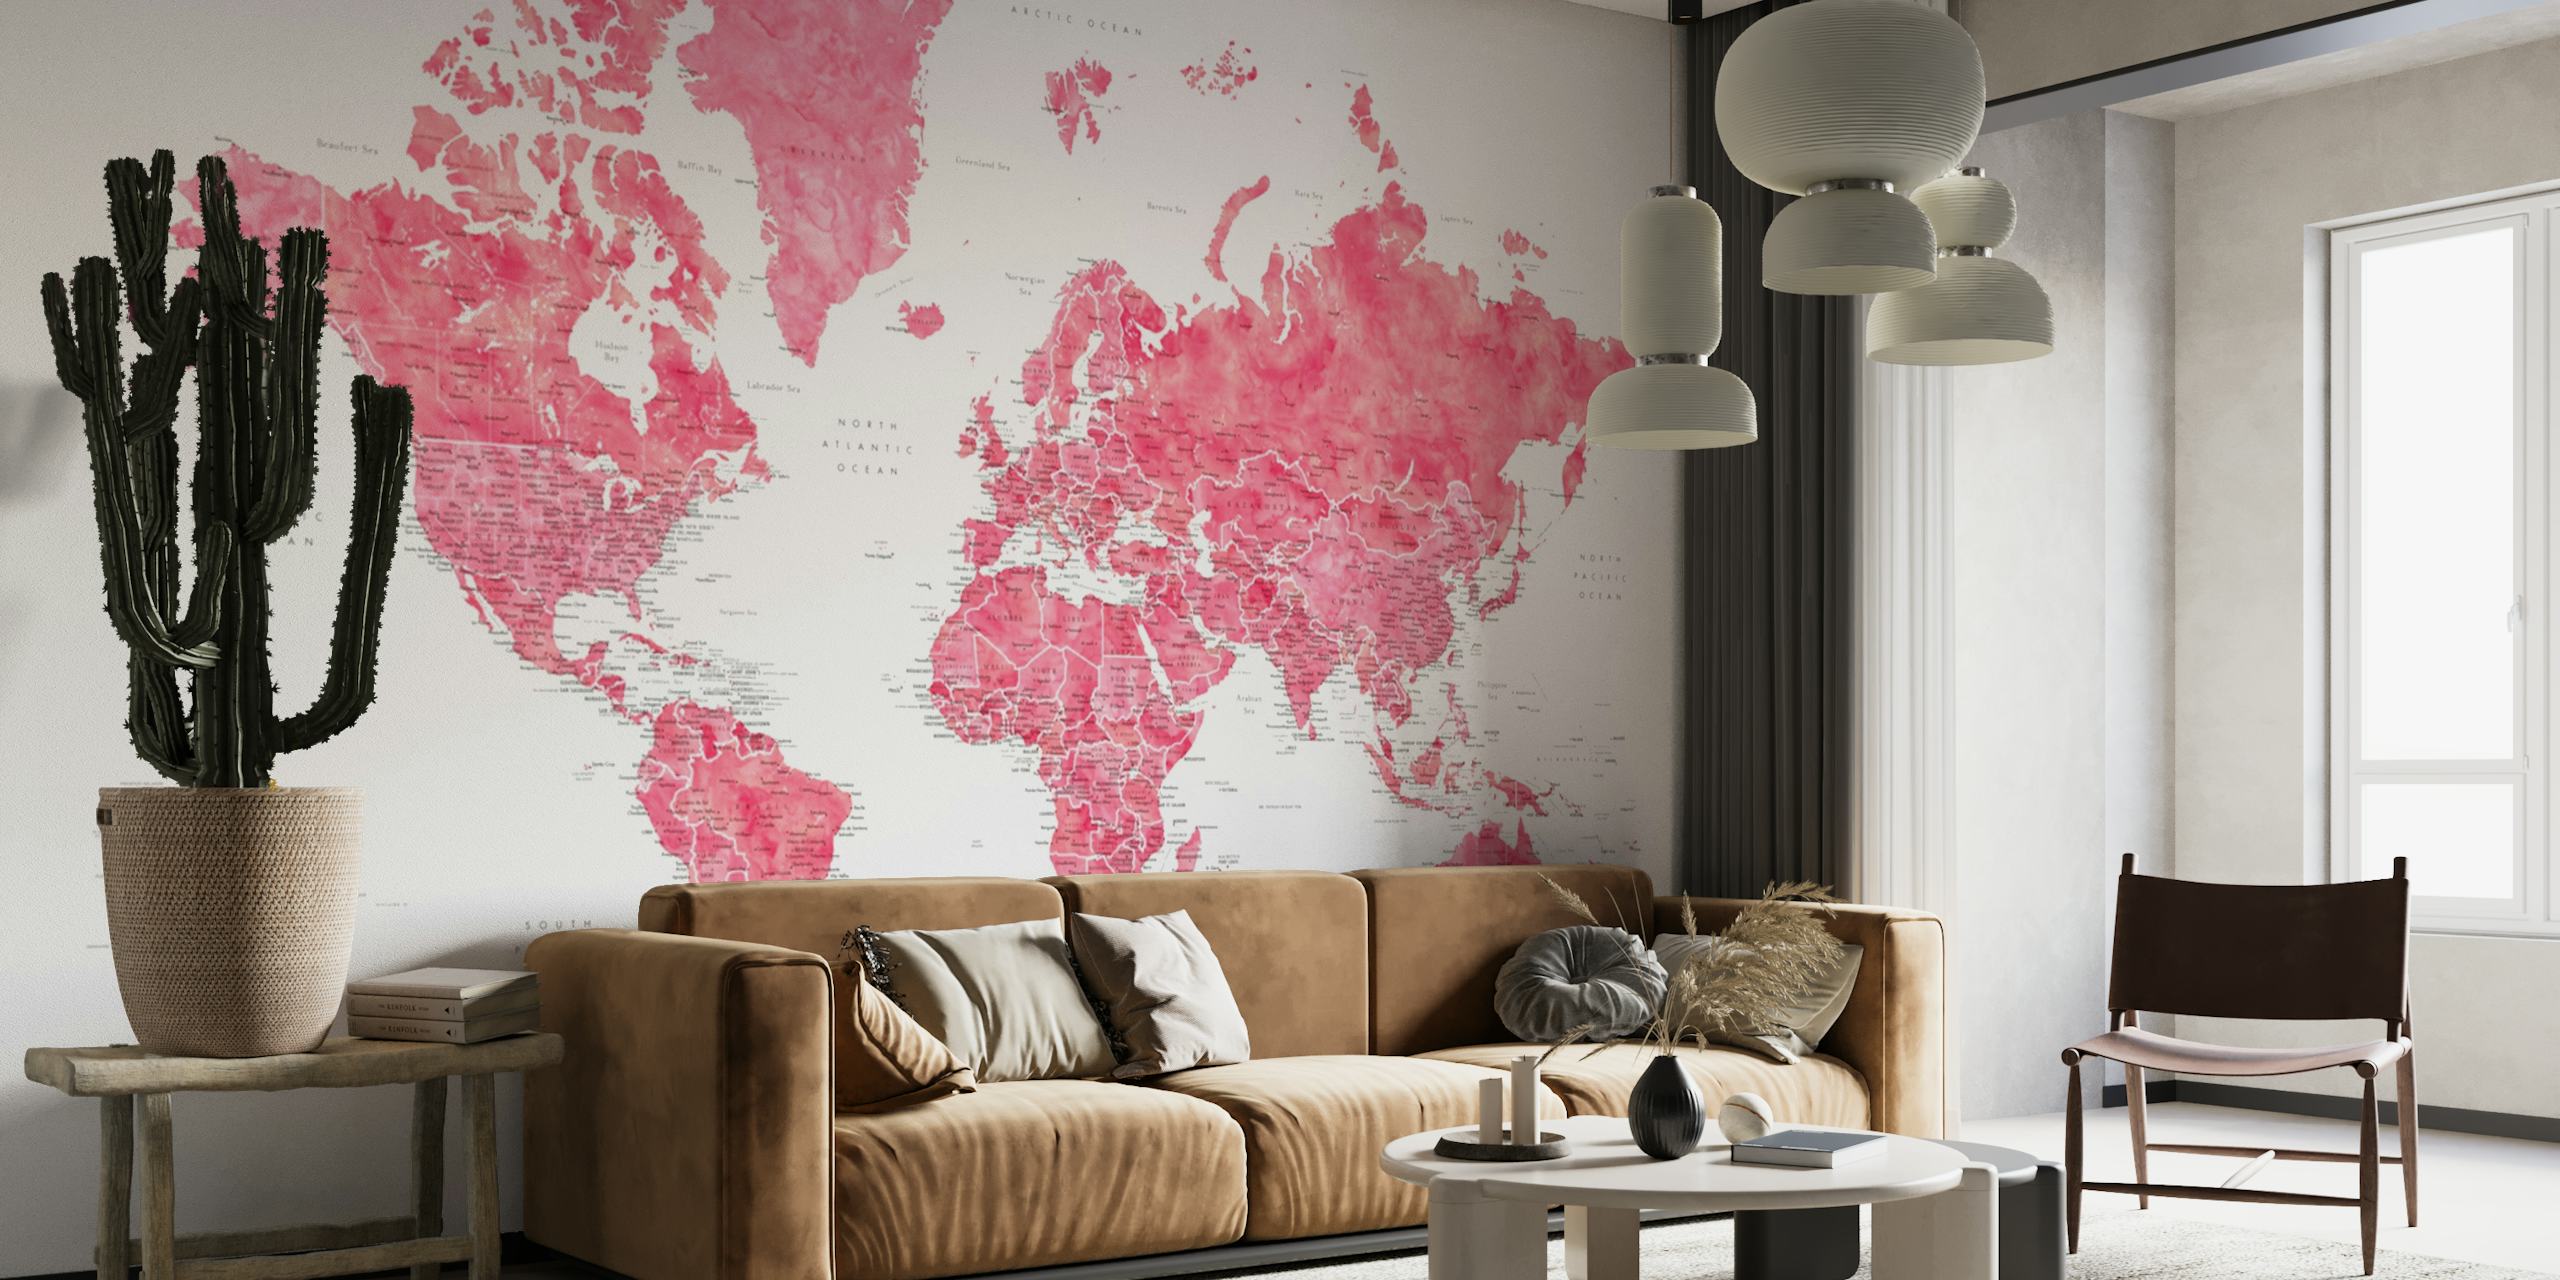 Fototapeta Wanda s podrobnou mapou světa se složitými geografickými detaily